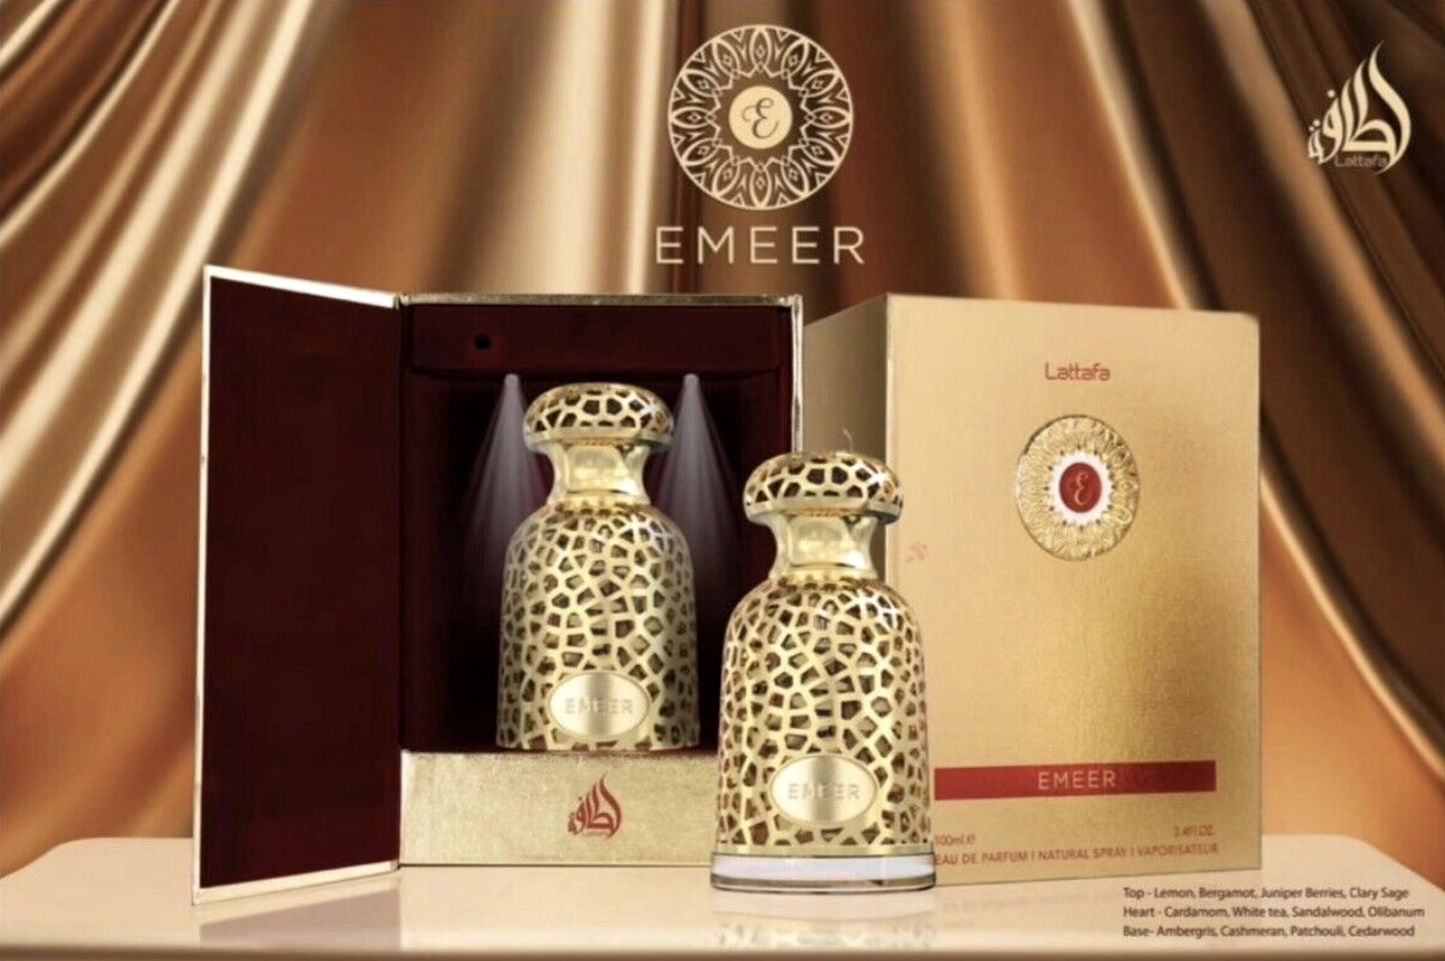 Emeer EDP By Lattafa Perfumes 10 ML sample